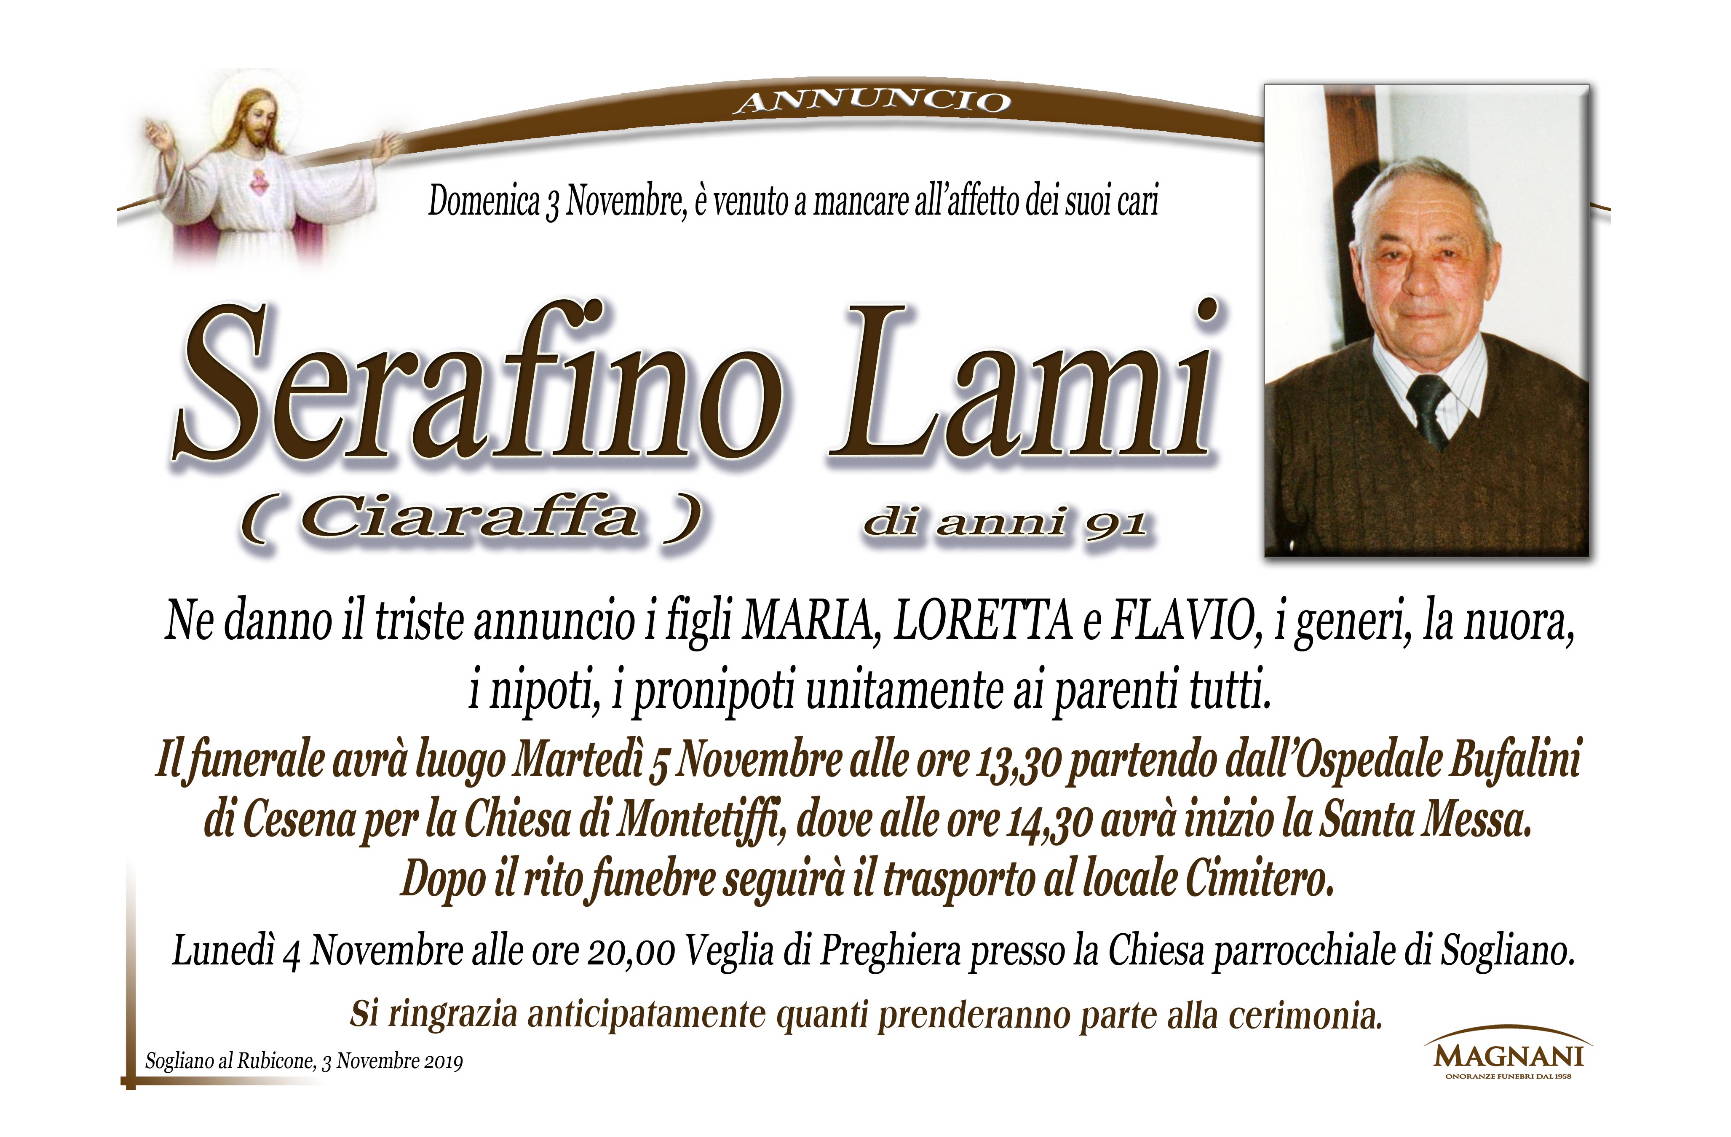 Serafino Lami